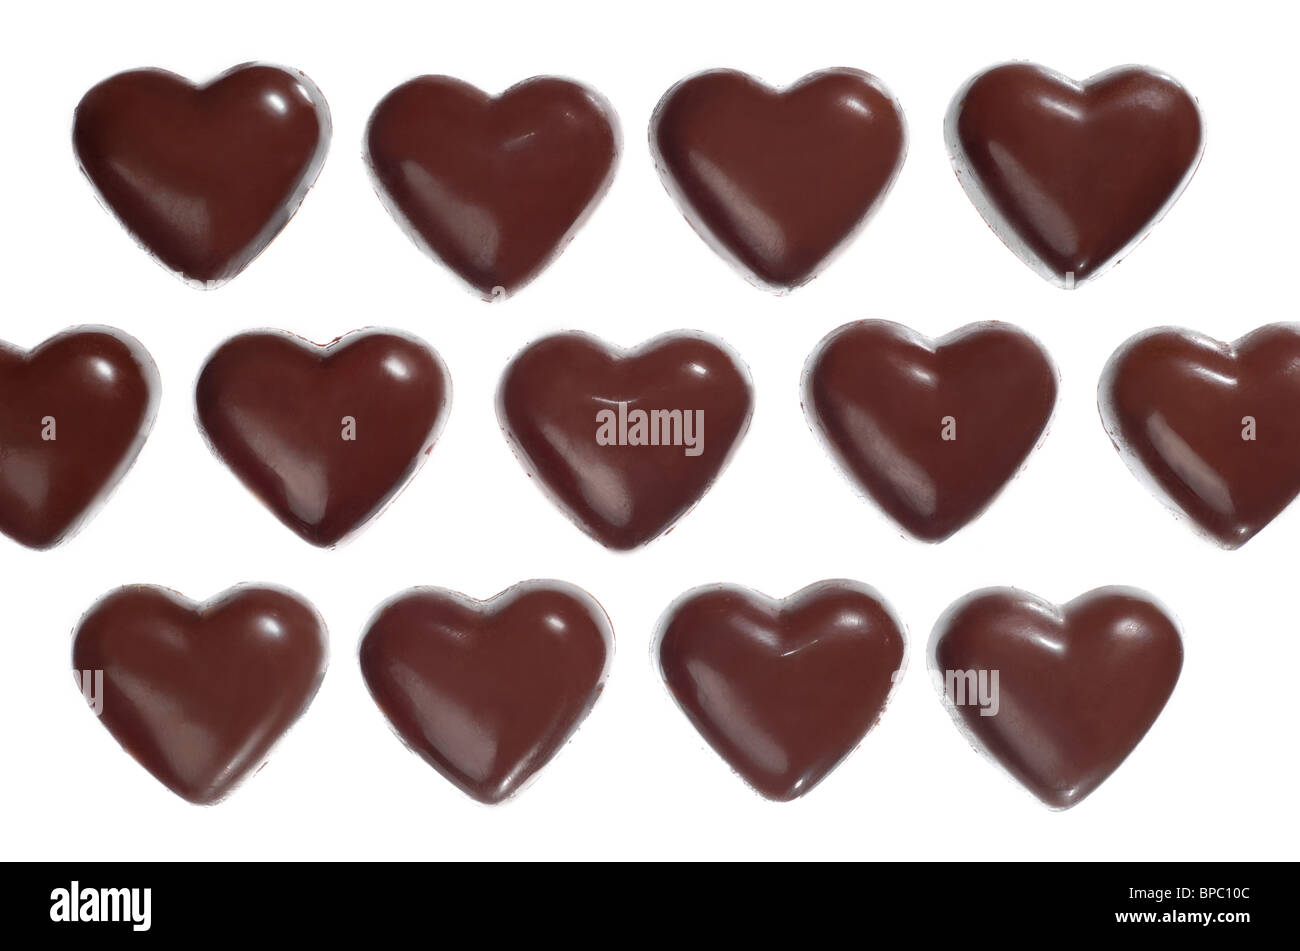 Heart-shaped dark chocolate candies Stock Photo